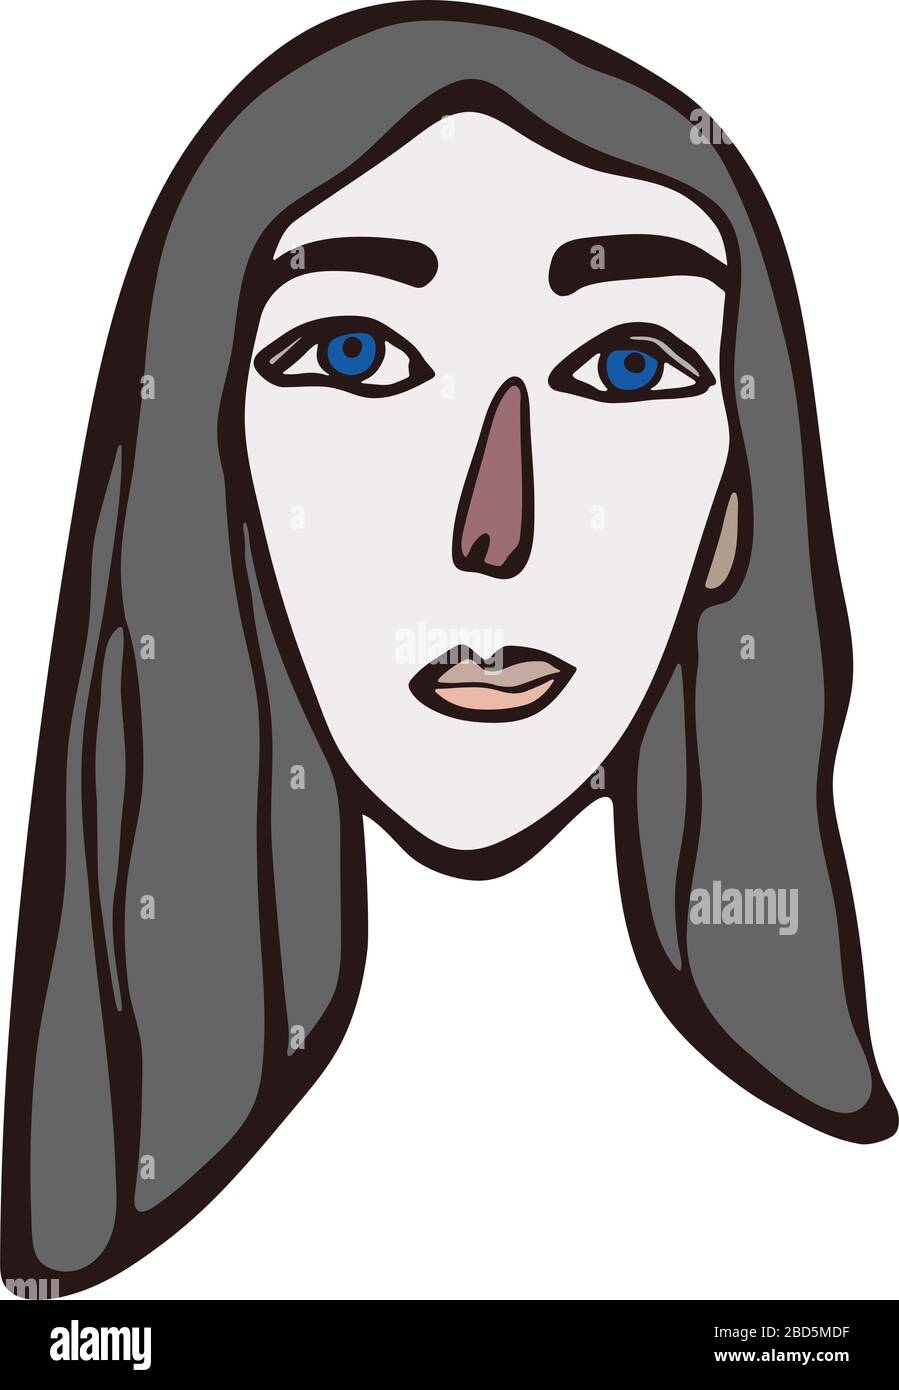 Ritratto femminile lineare minimalista. Capelli grigi naturali, viso lungo chiaro con occhi blu, tratti facciali europei o americani. Design scandinavo Illustrazione Vettoriale